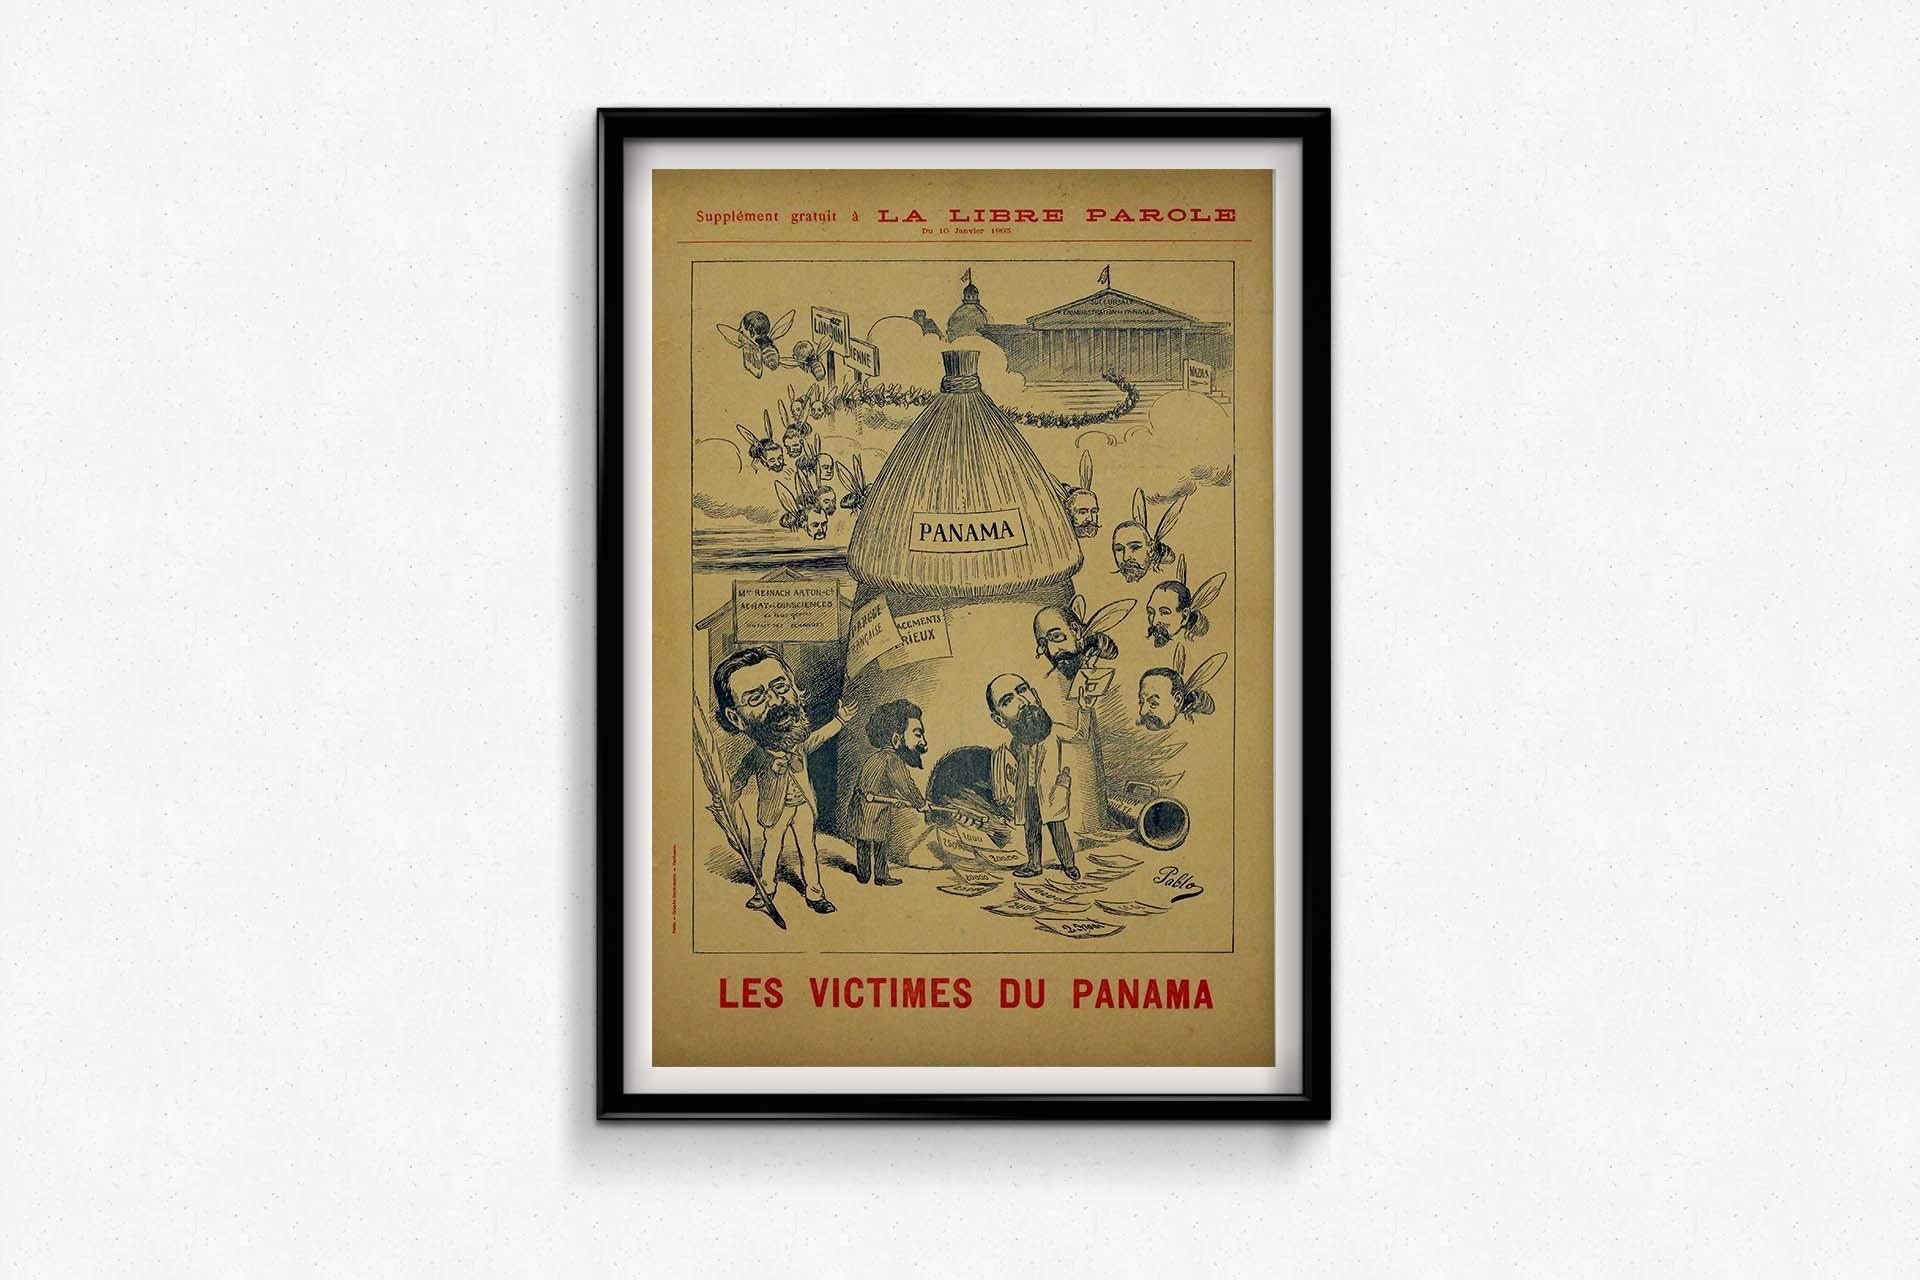 1893 original poster by Pablo - La libre parole - Les victimes du Panama For Sale 1